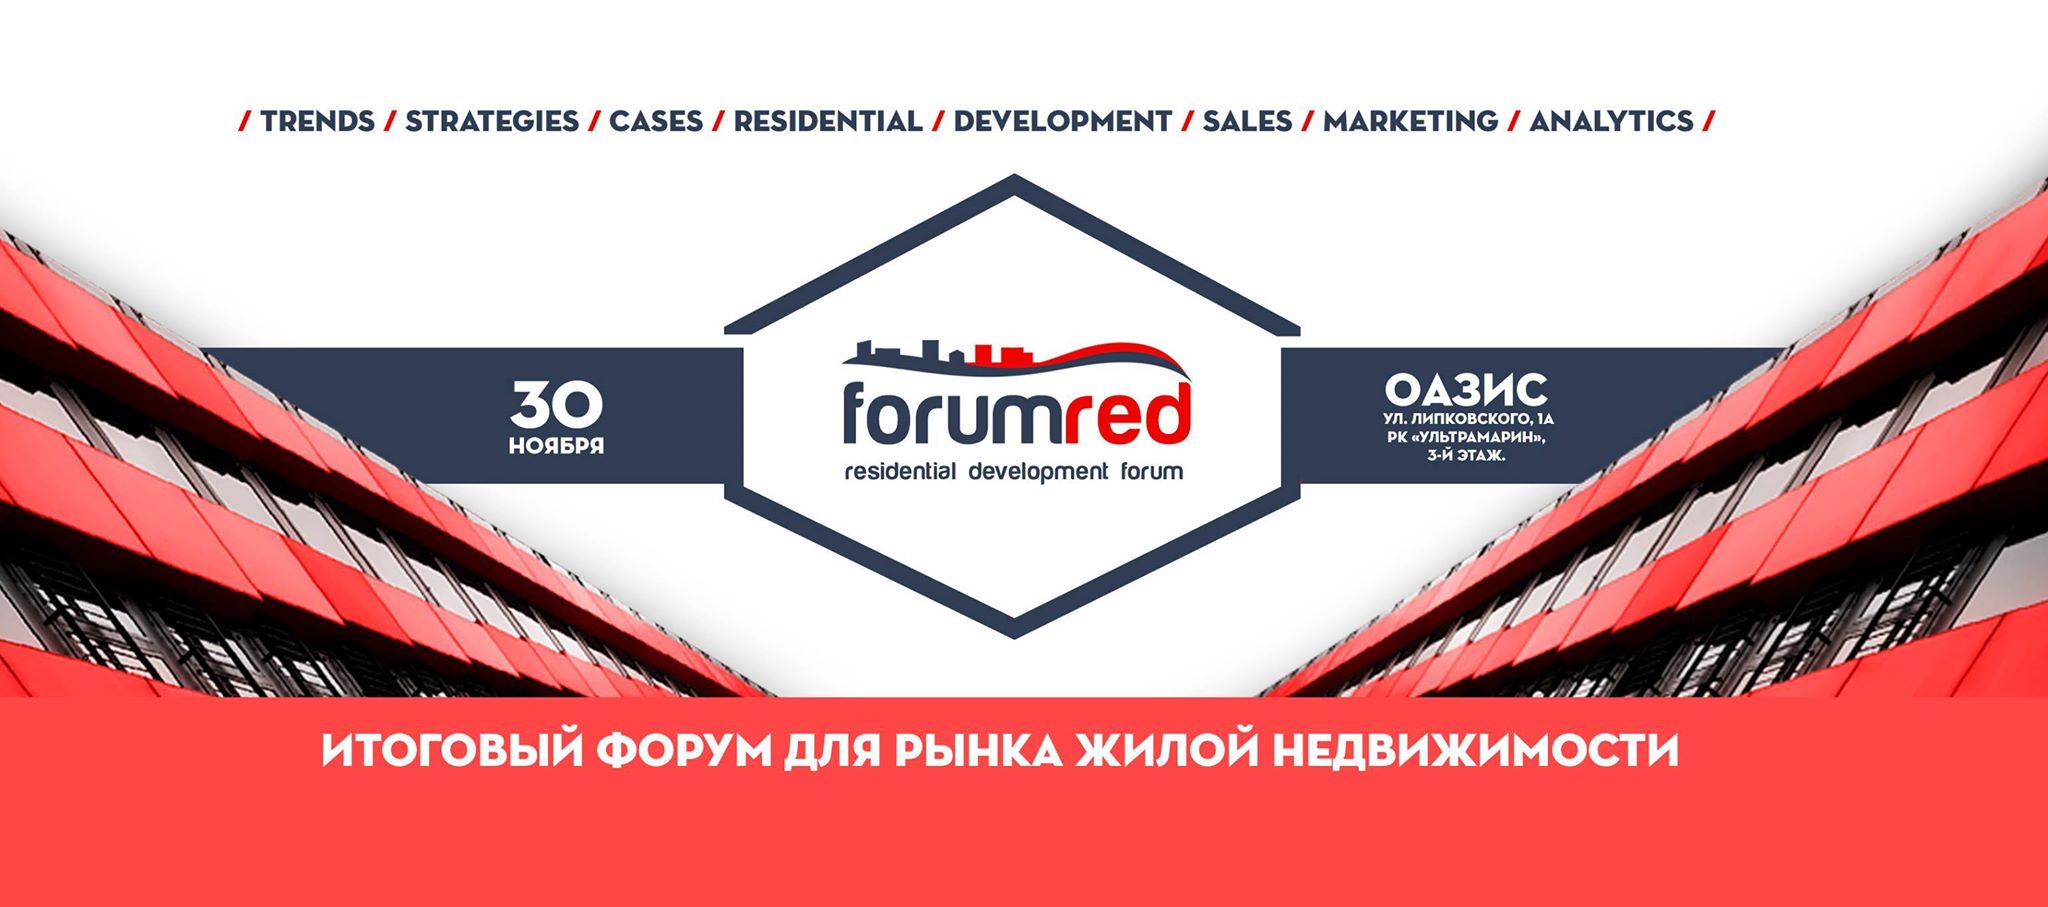 В Киеве пройдет итоговое событие рынка недвижимости - RED Forum